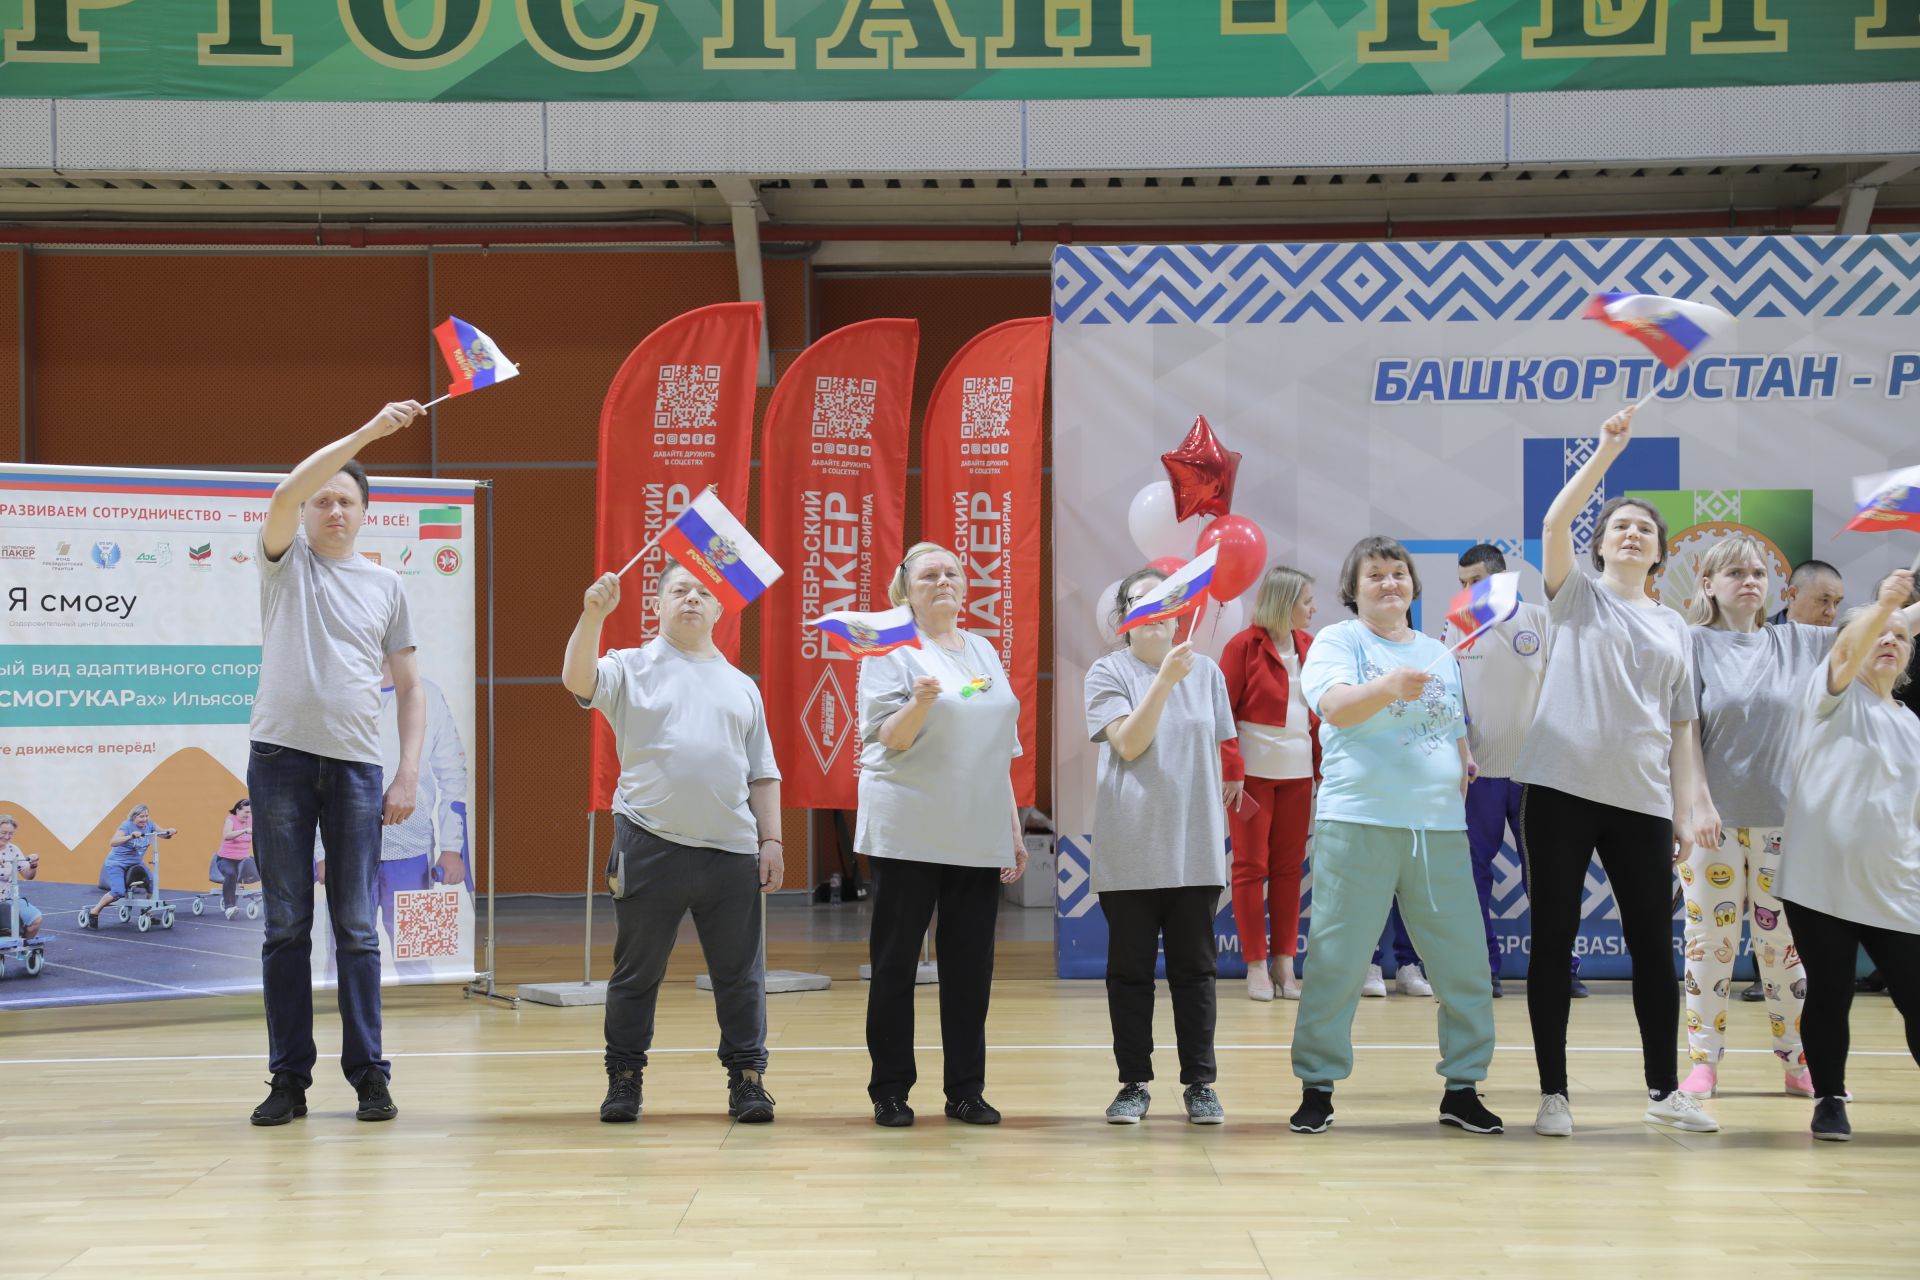 Владимир Путин поддержал новый адаптивный вид спорта на «смогукарах» Марата Ильясова